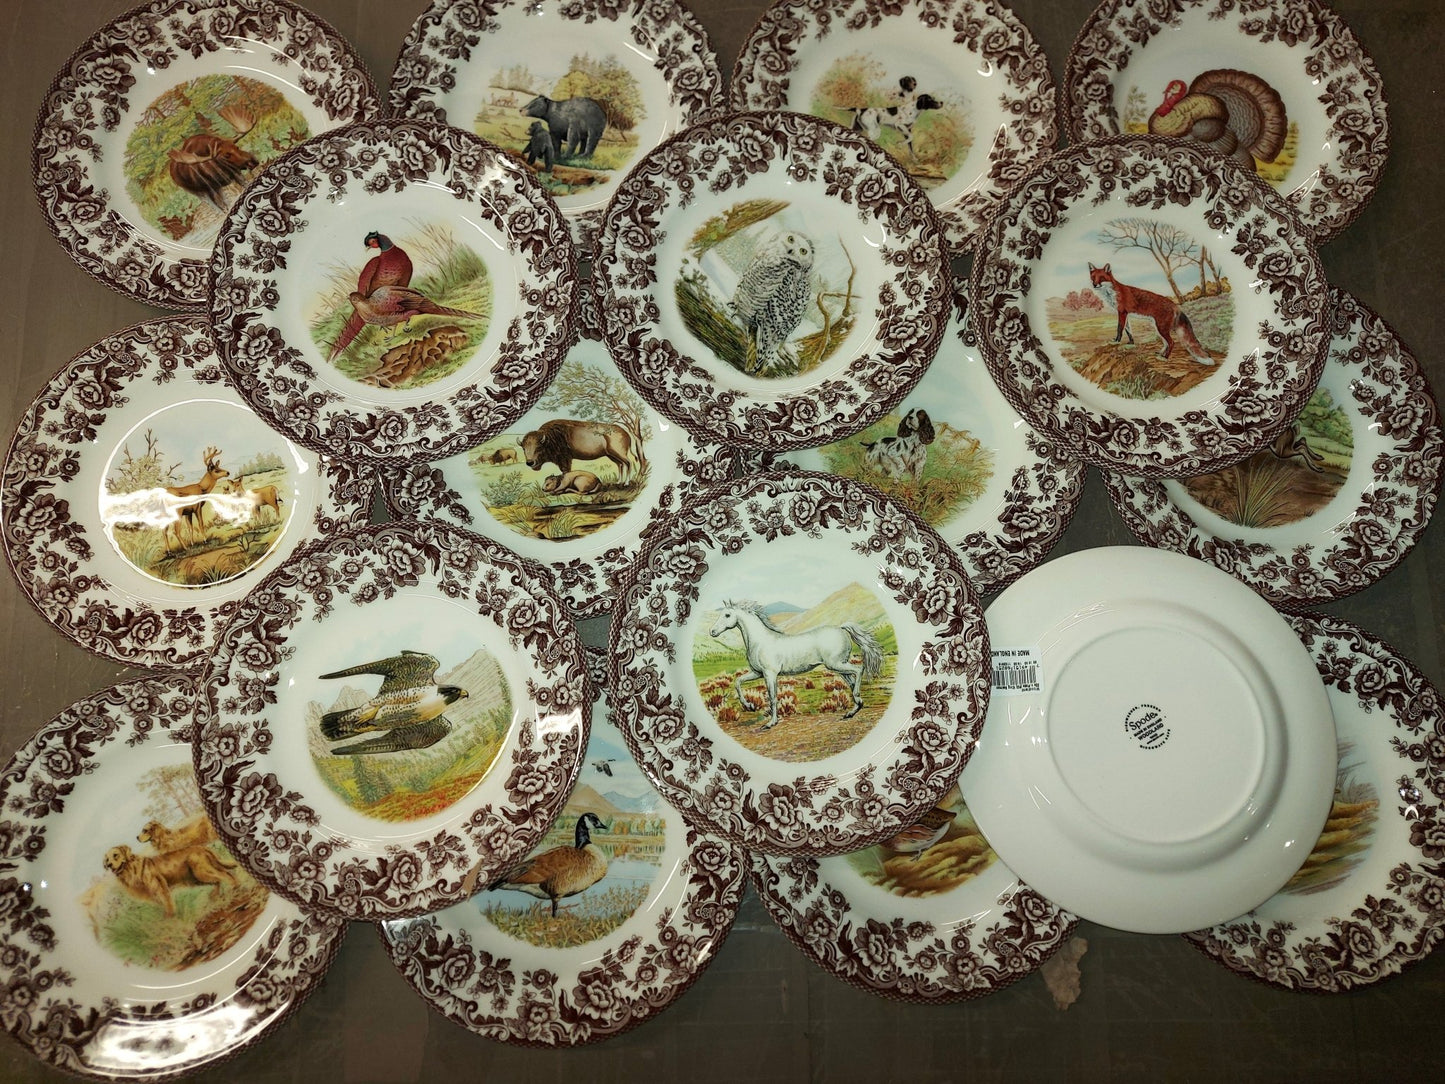 Spode Woodland set of 18 Salad Plates includes 18 Designs-WOW - Shoppedeals